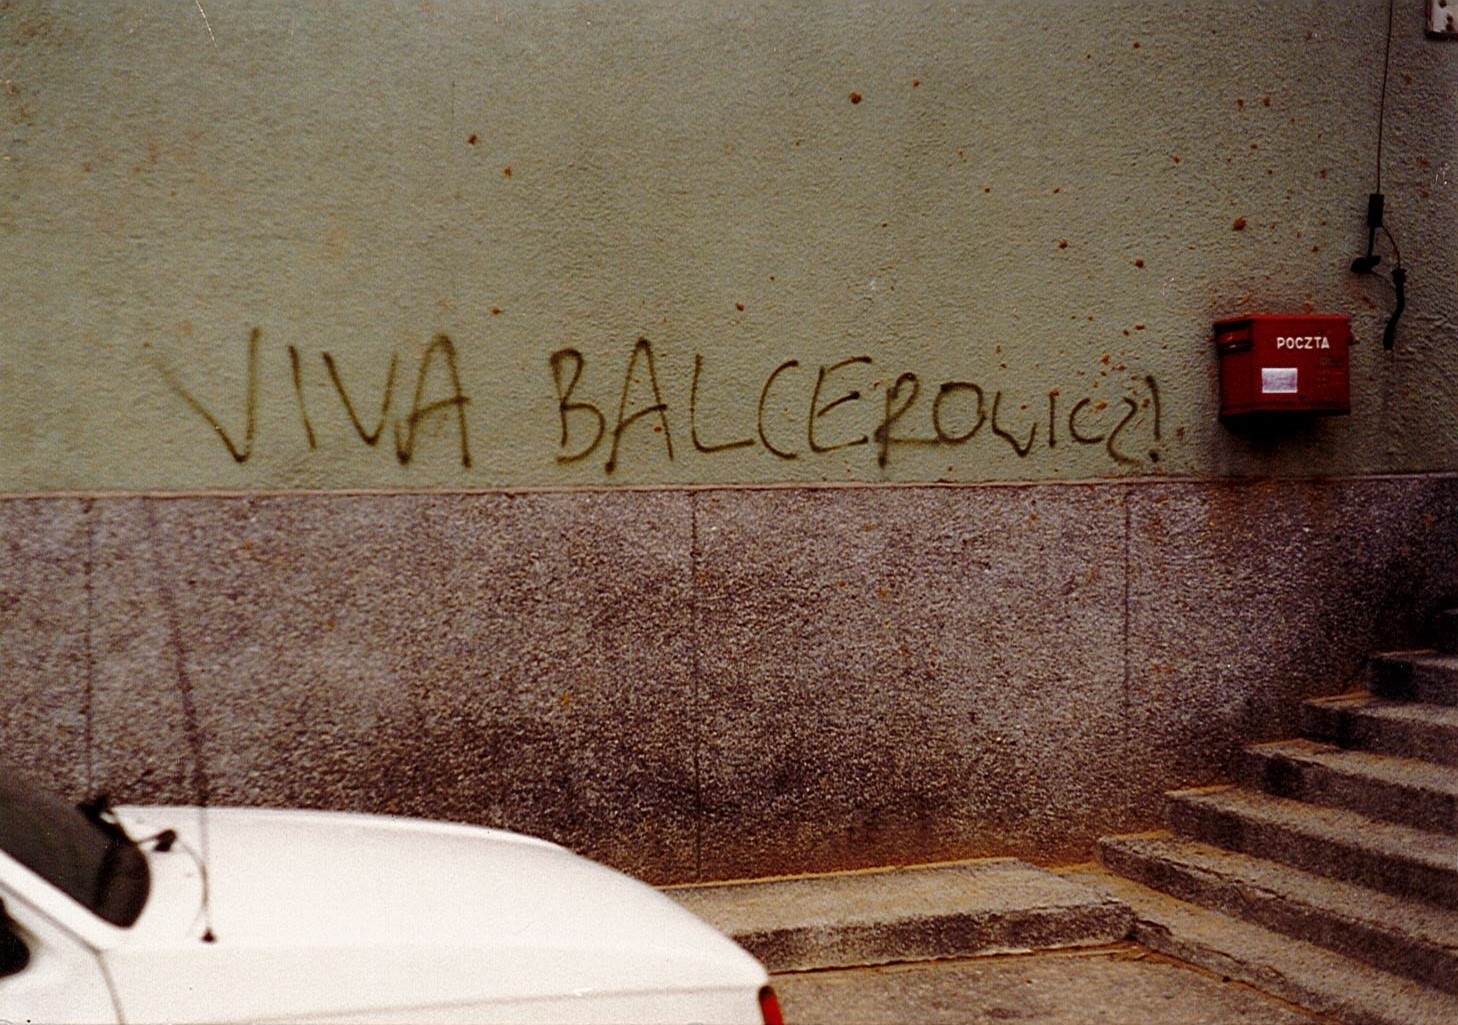 Viva Balcerowicz